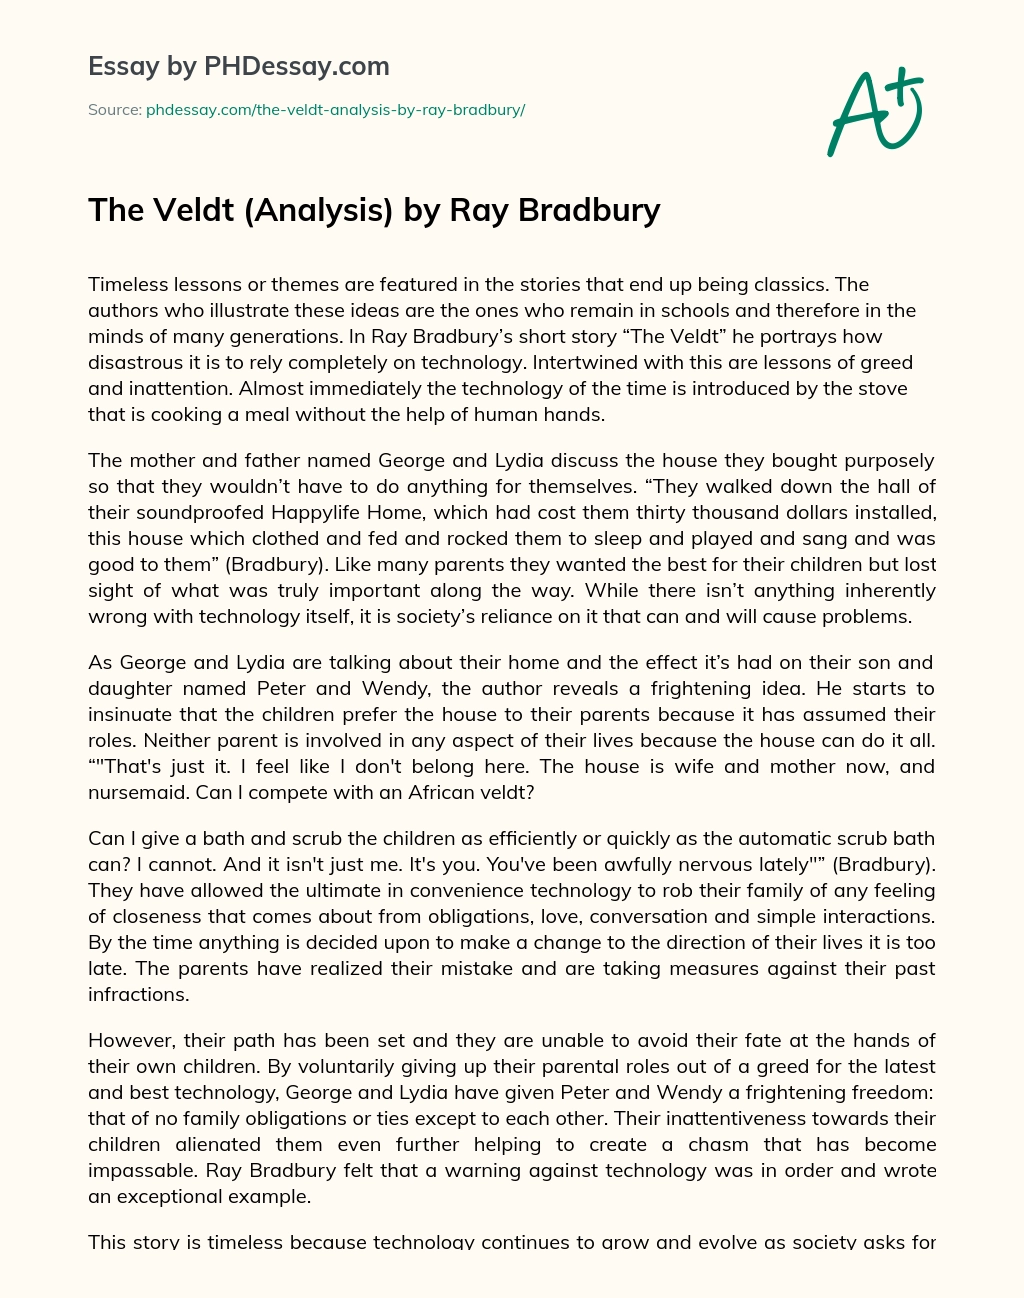 The Veldt (Analysis) by Ray Bradbury essay